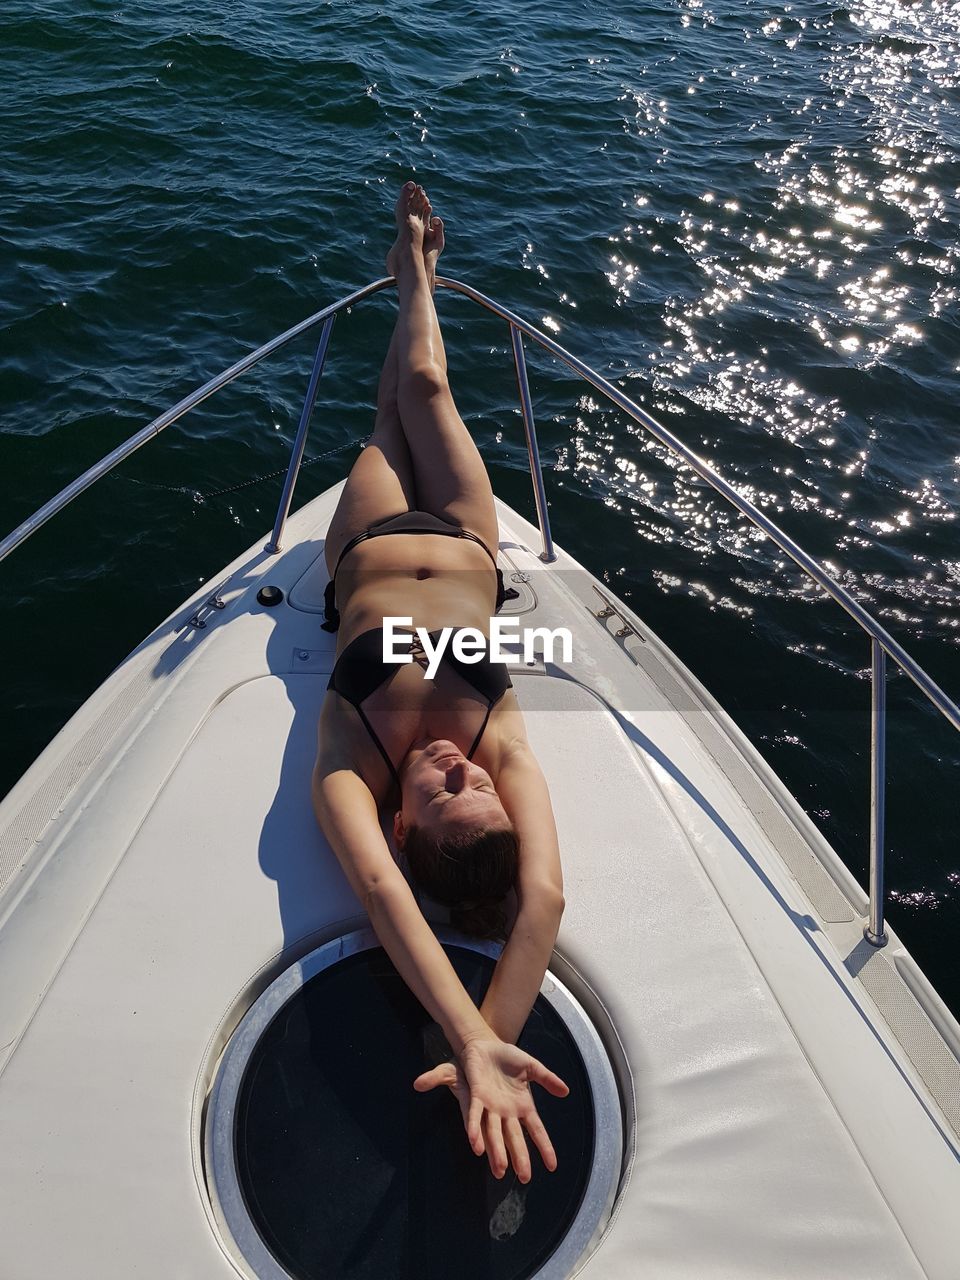 Woman lying on boat in sea